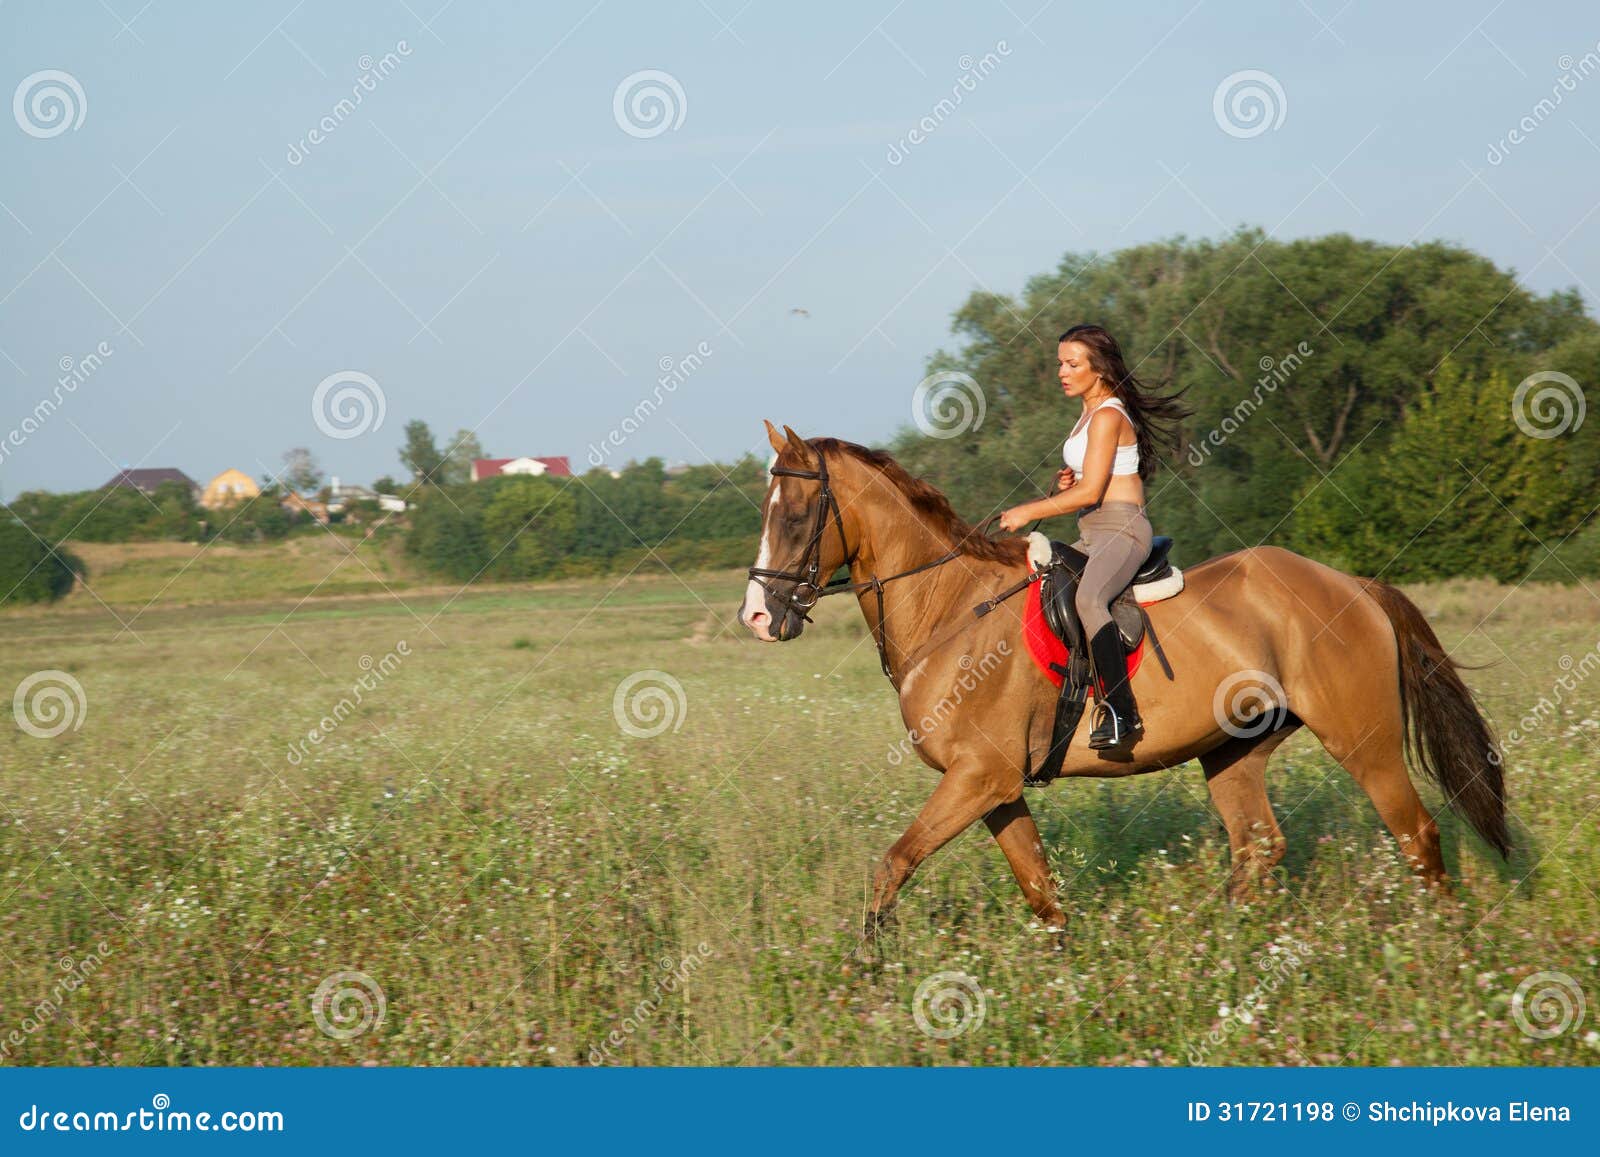 Едем едем на коне песня. Лошадь едет на лошади. Дворянка едет на лошади. Девушка быстро едет на лошади. Рыжая девушка едет на лошади.